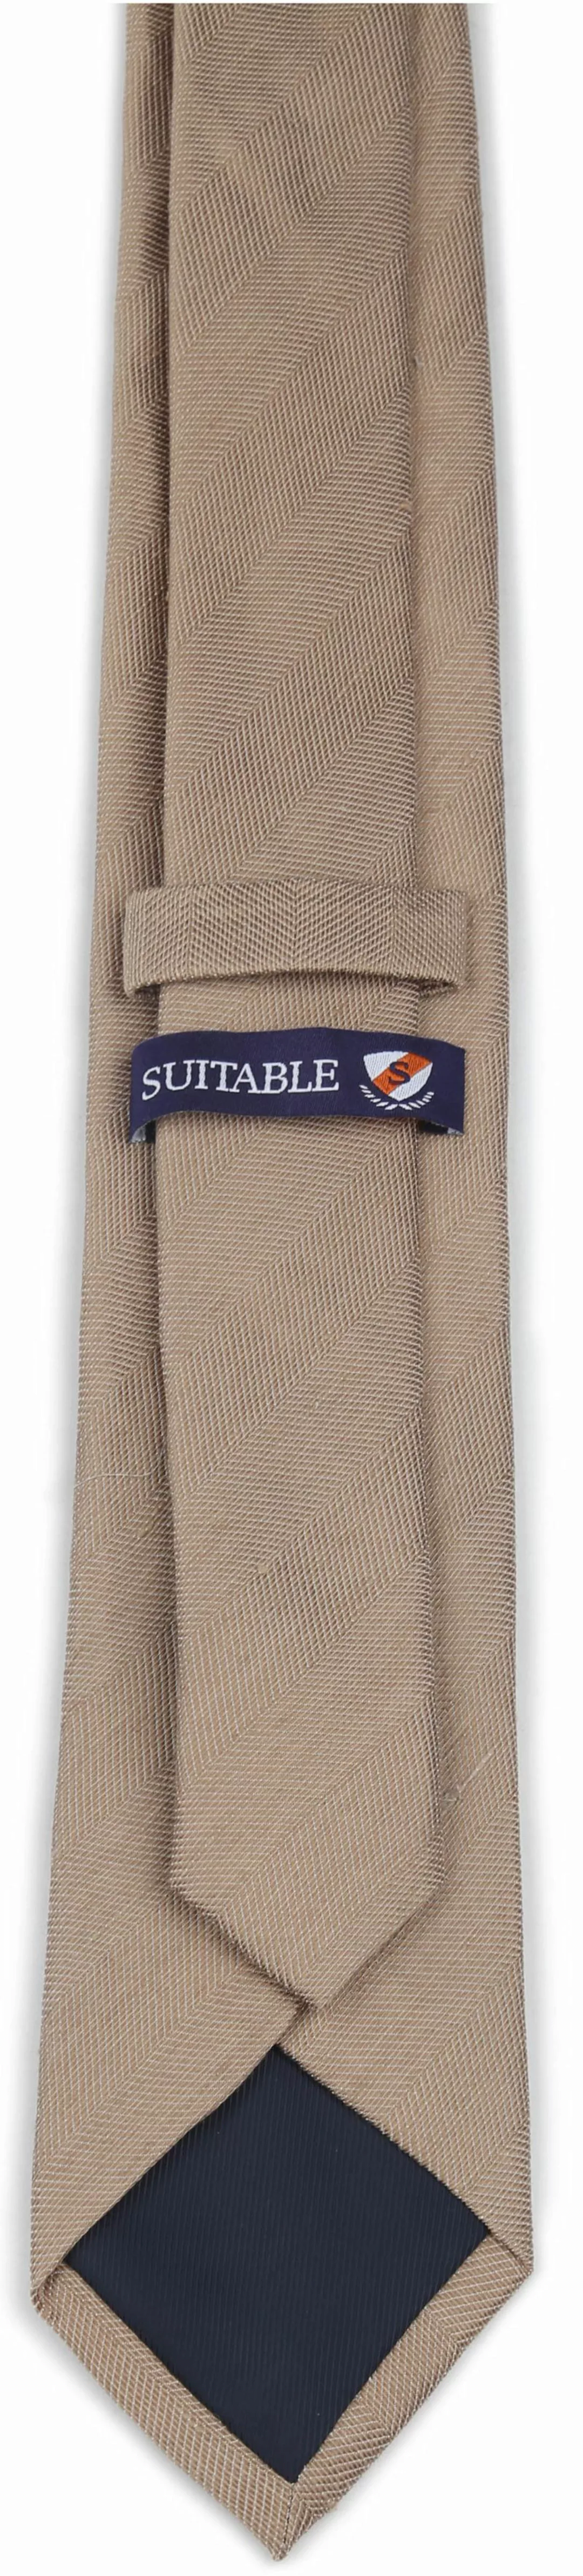 Suitable Leinen Seide Krawatte Beige - günstig online kaufen